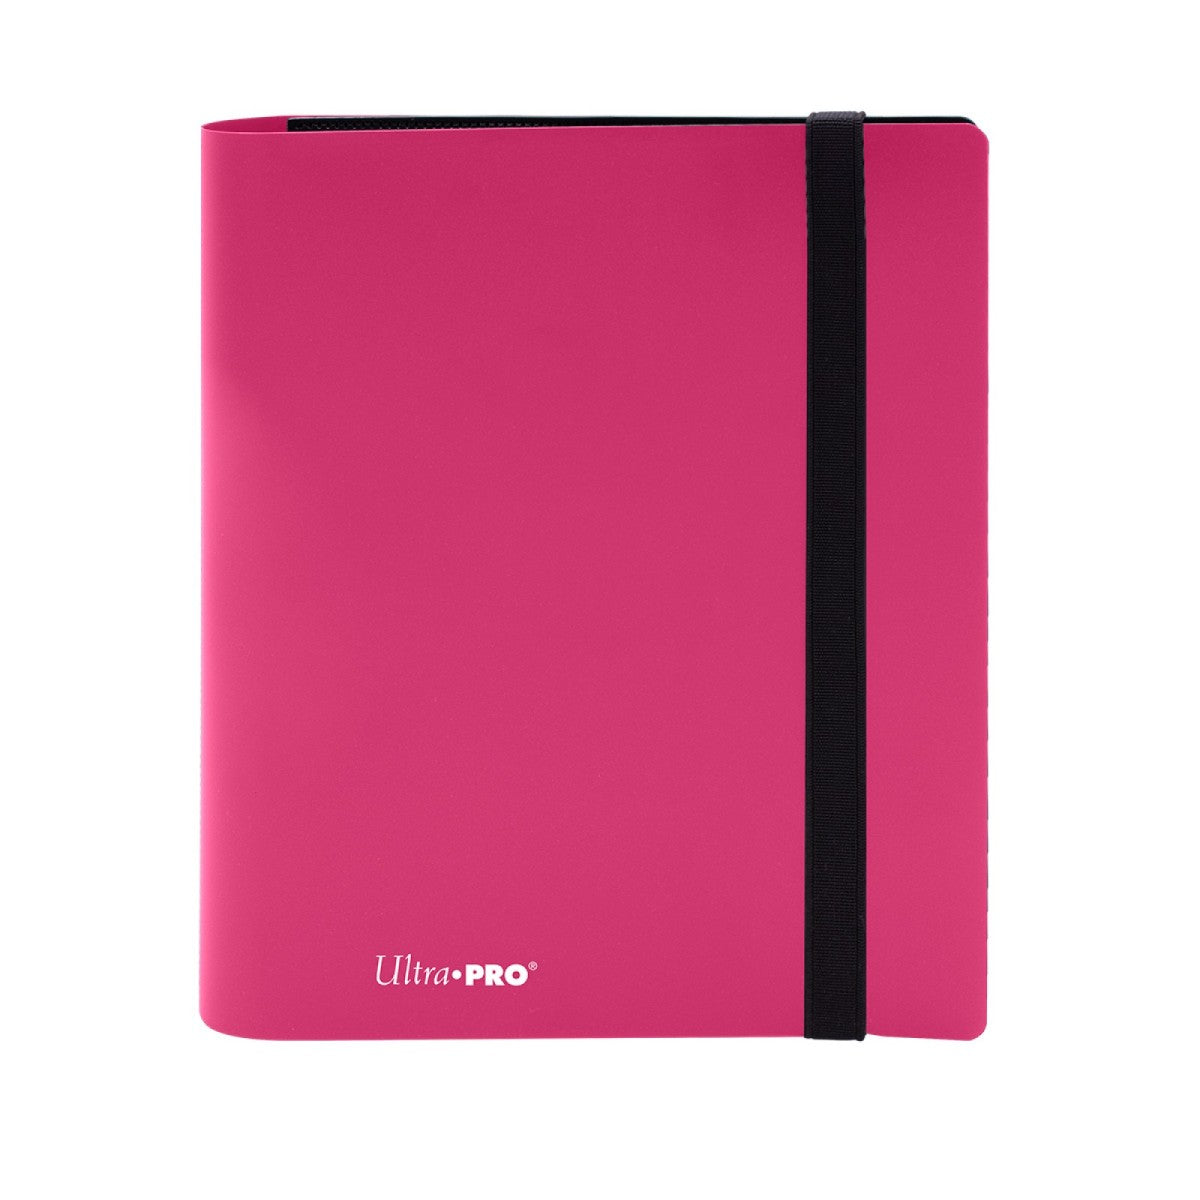 ULTRA PRO Binder - 4-Pocket Eclipse Hot Pink